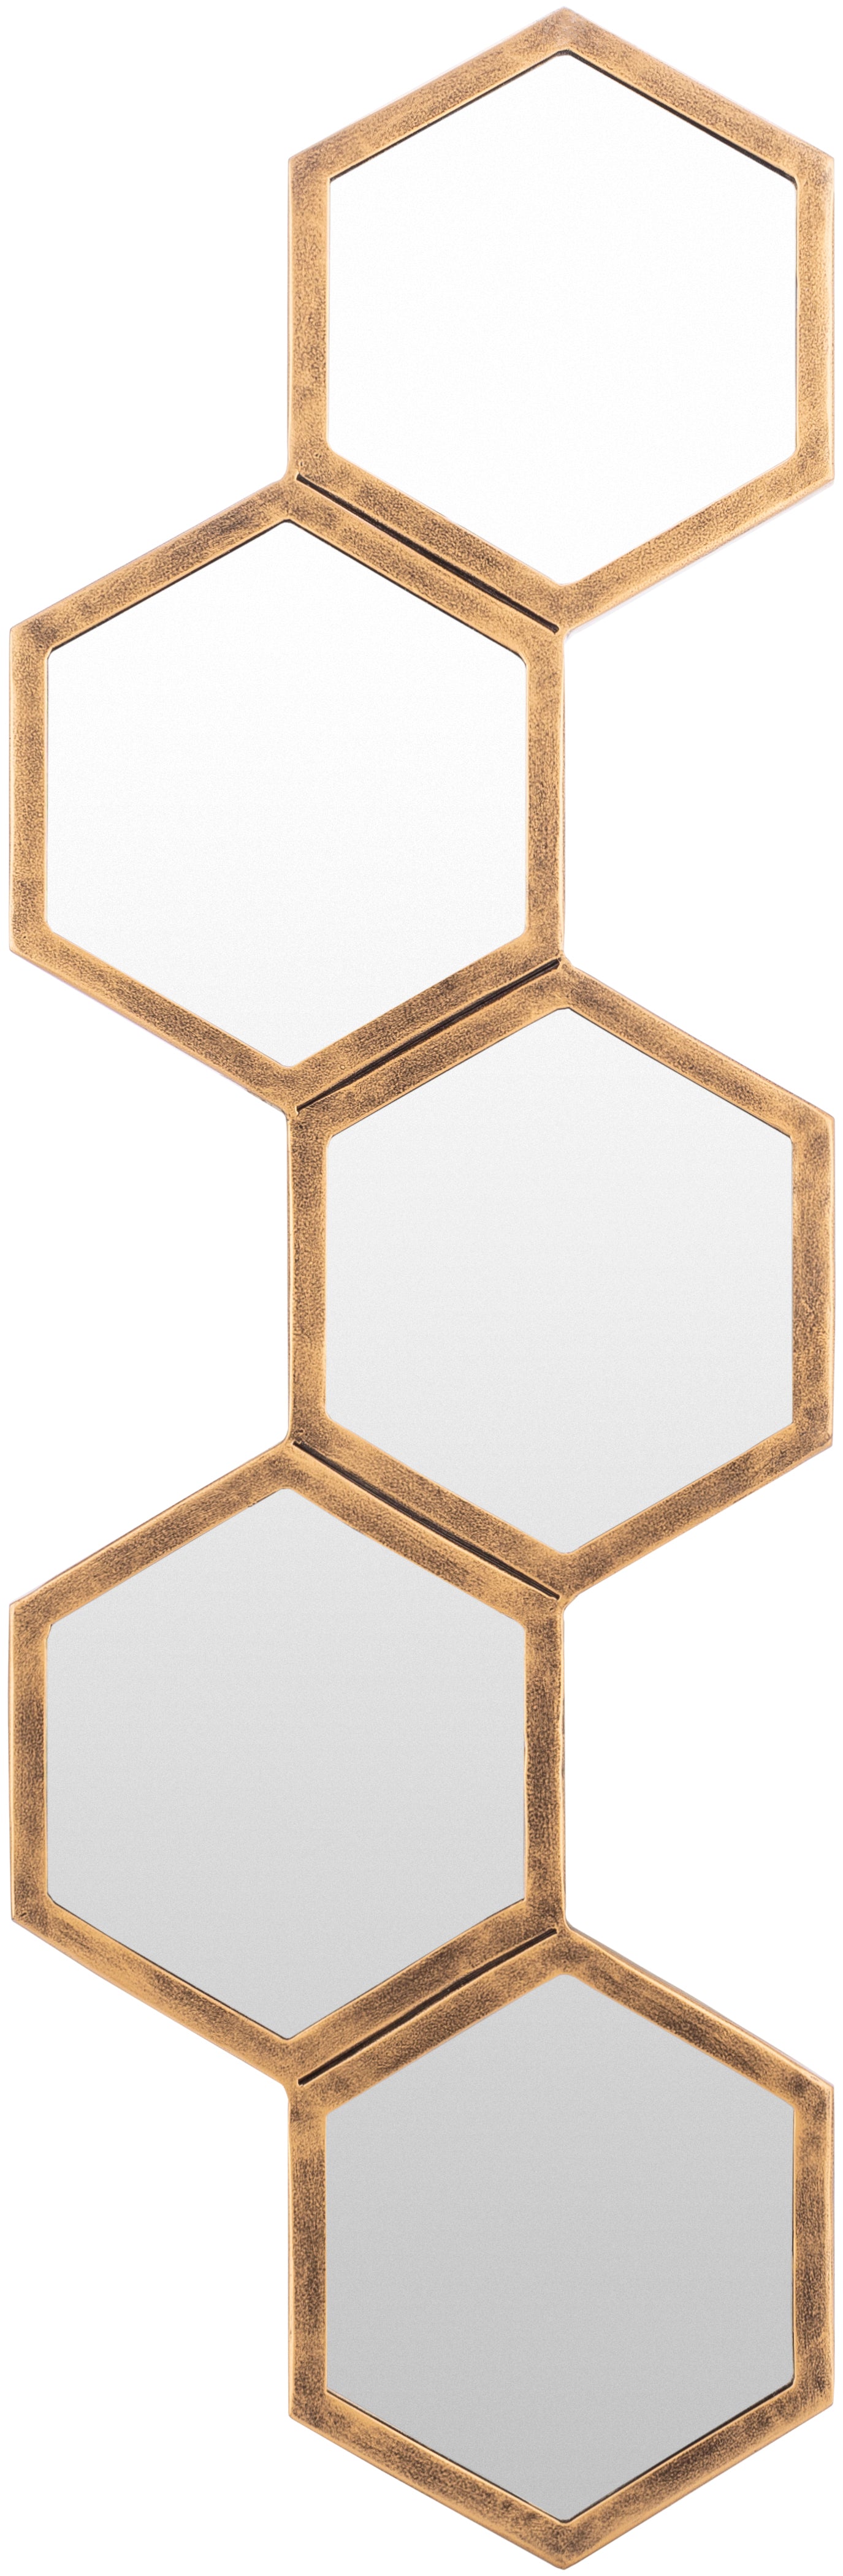 Honeycomb Mirror 1-Mirror-Surya-Wall2Wall Furnishings